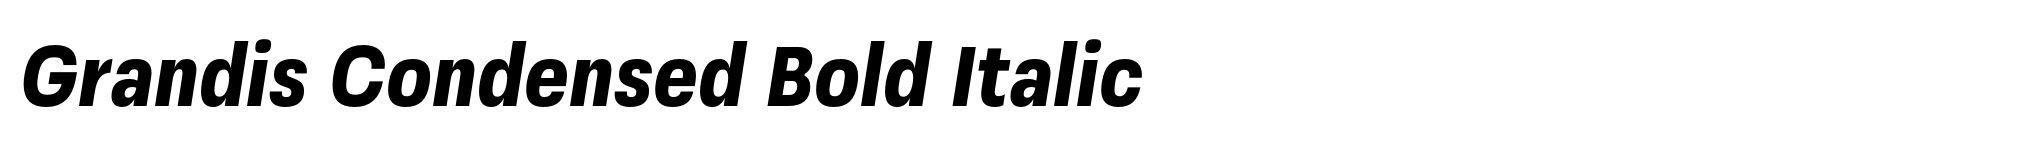 Grandis Condensed Bold Italic image